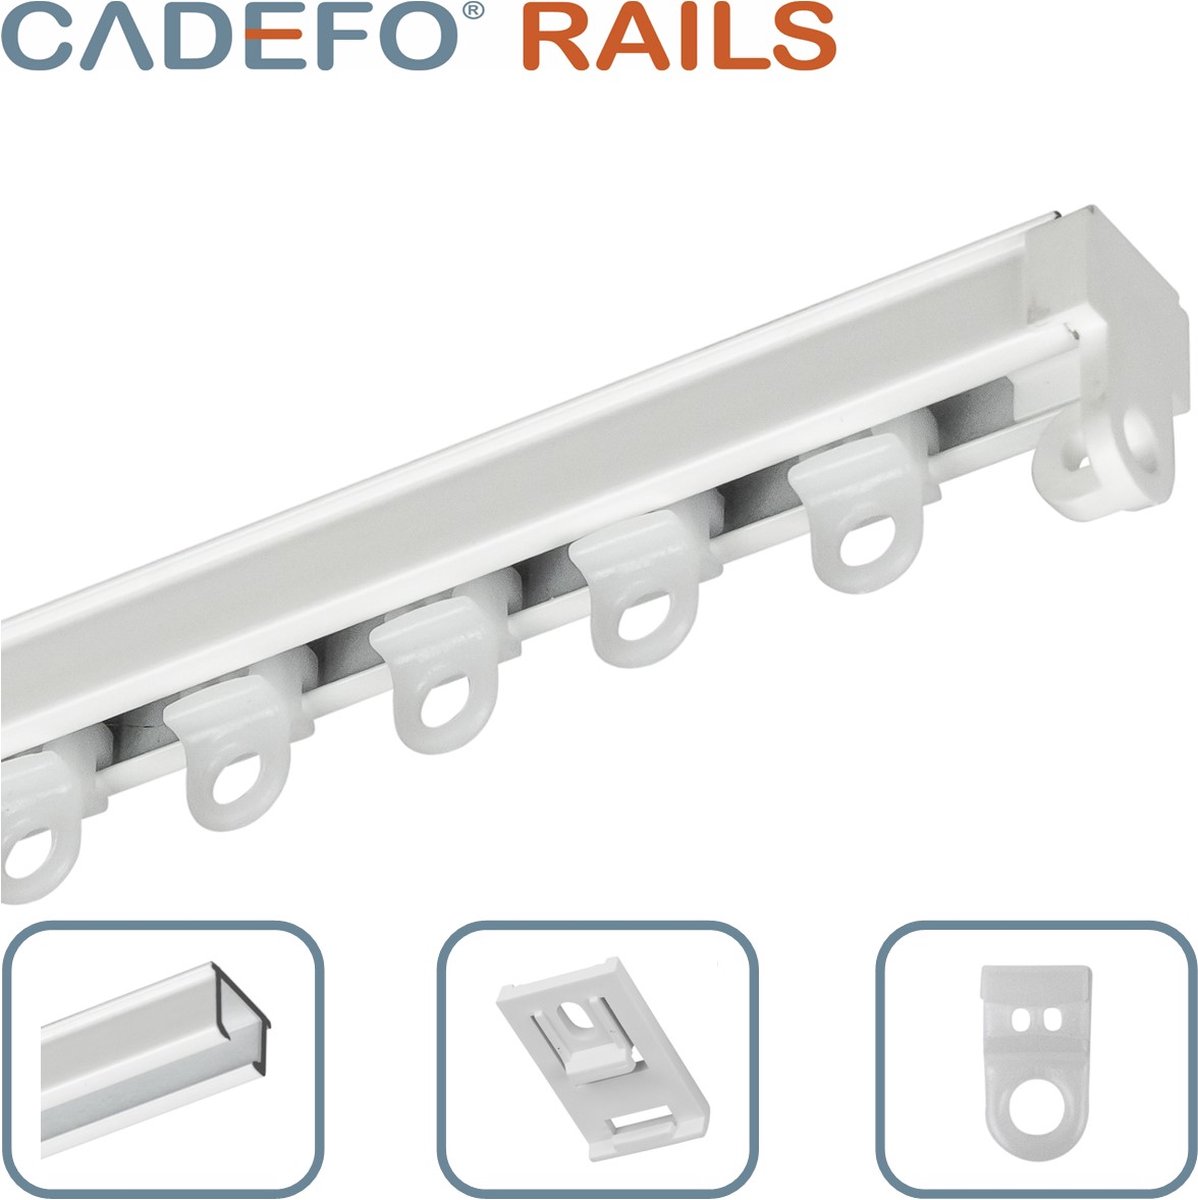 CADEFO RAILS (101 - 150 cm) Gordijnrails - Compleet op maat! - UIT 1 STUK - Leverbaar tot 6 meter - Plafondbevestiging - Lengte 135 cm